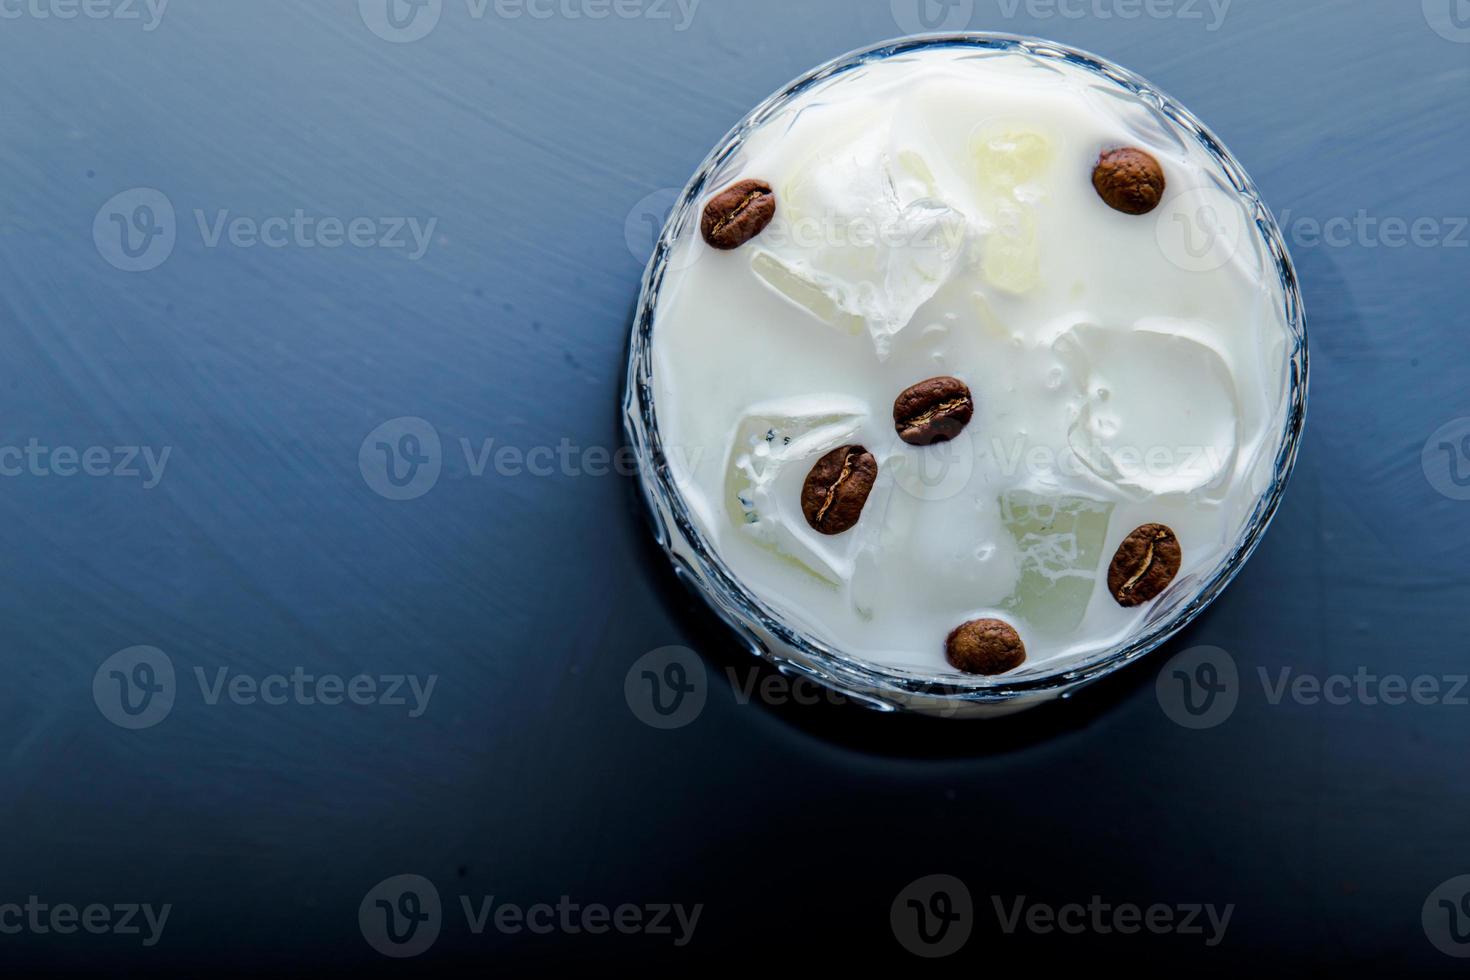 vista de detalhe closeup de coquetel alcoólico russo branco com espaço de cópia. foto